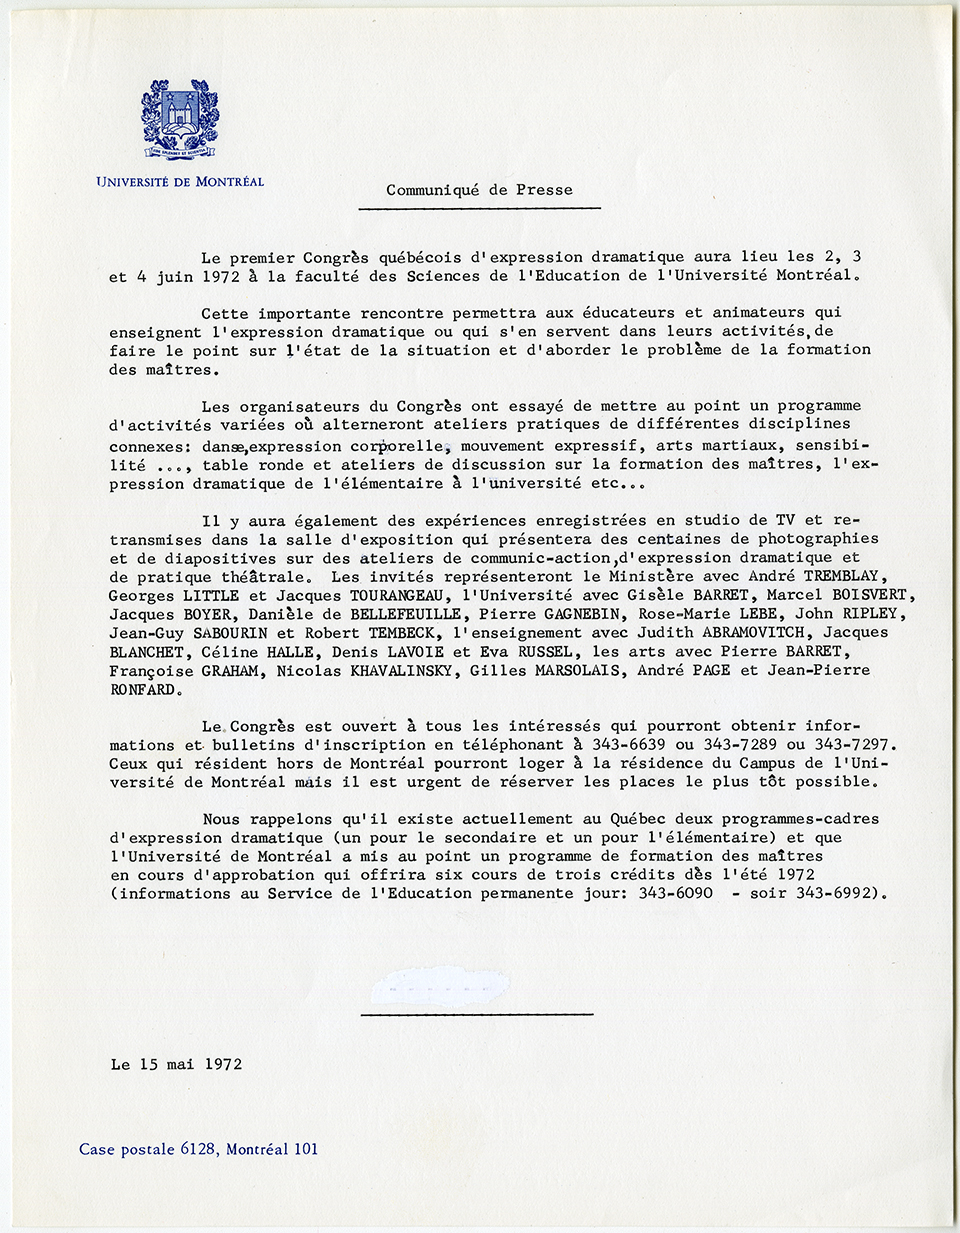 Communiqué de presse annonçant le premier congrès d’expression dramatique, 15 mai 1972. Archives UdeM, P0419-K-3-D0006